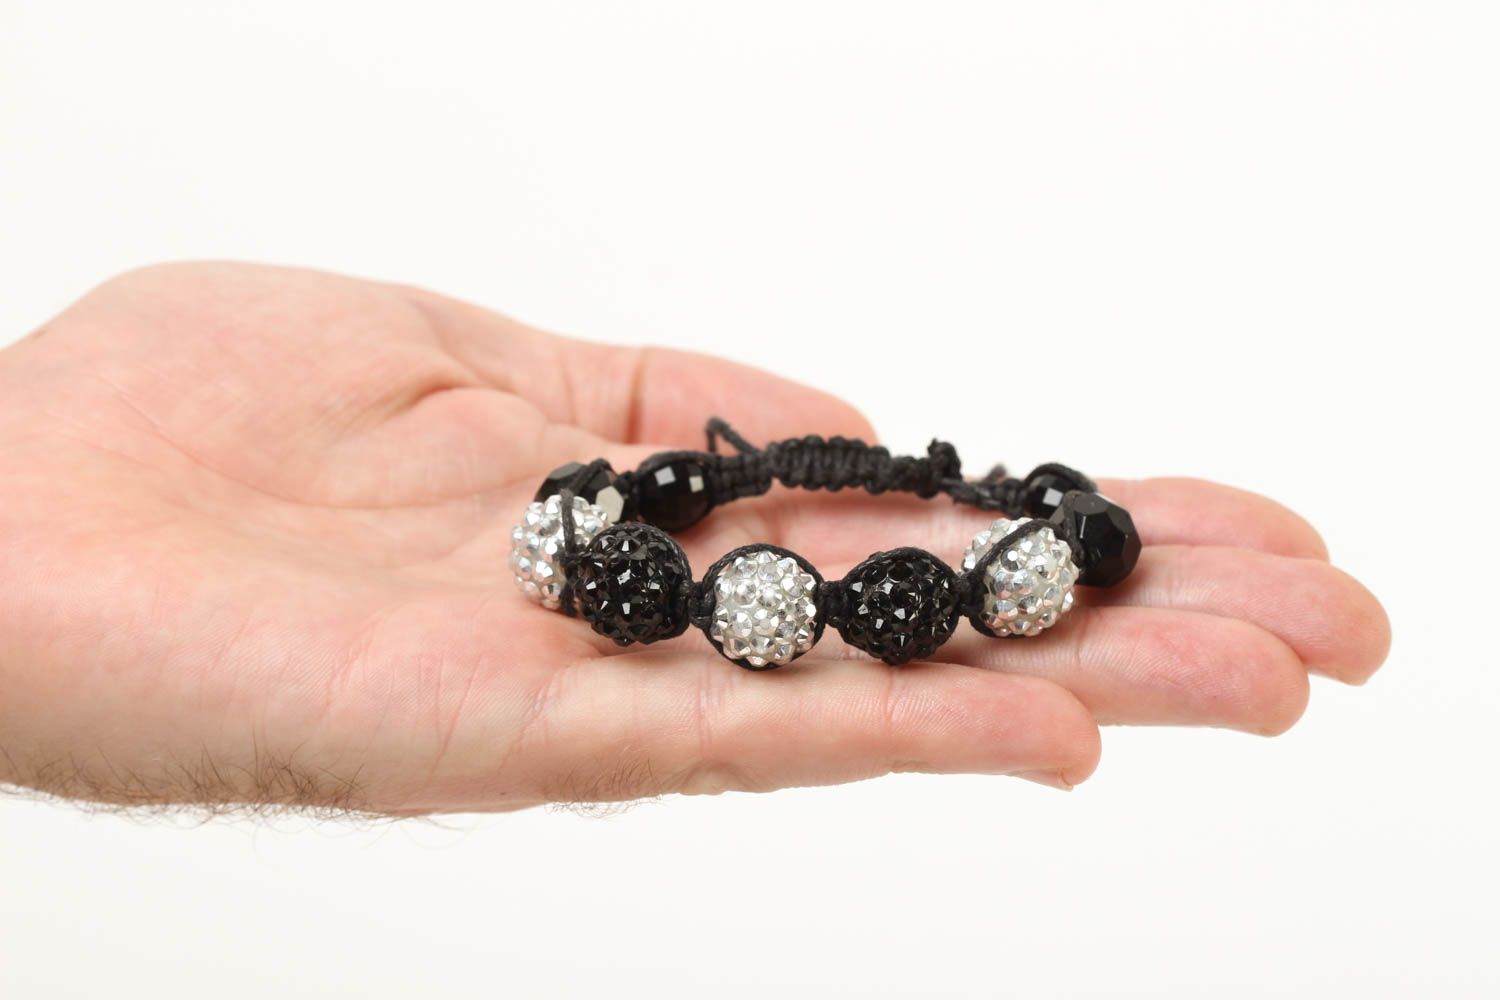 Handmade silver and black beads strand bracelet for teen girls photo 6